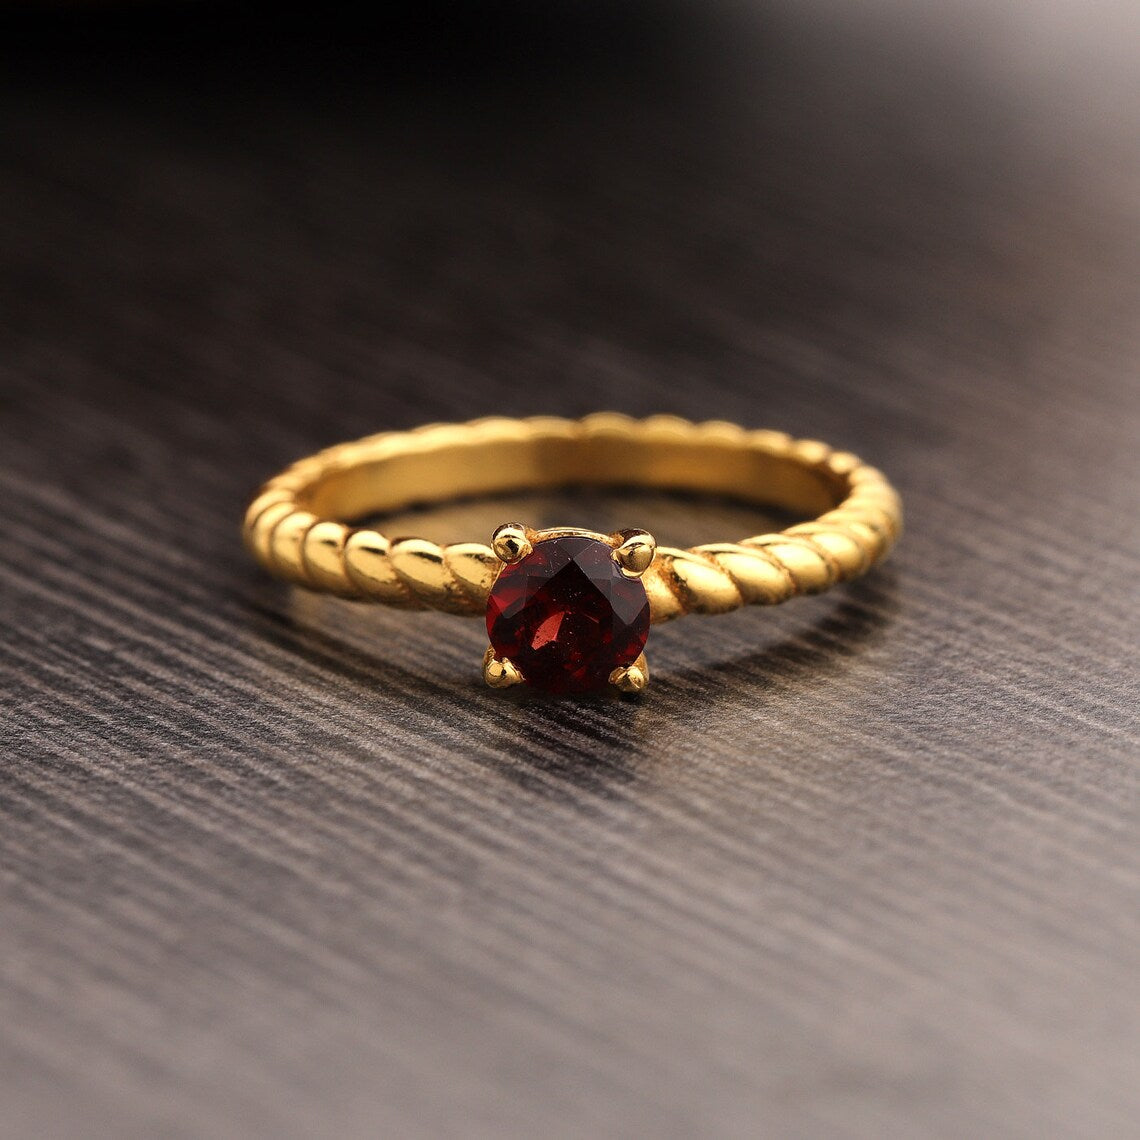 Natural garnet round gemstone ring, Prong set Garnet ring, garnet gemstone twisted band ring, Gold Plated garnet ring, minimalist ring